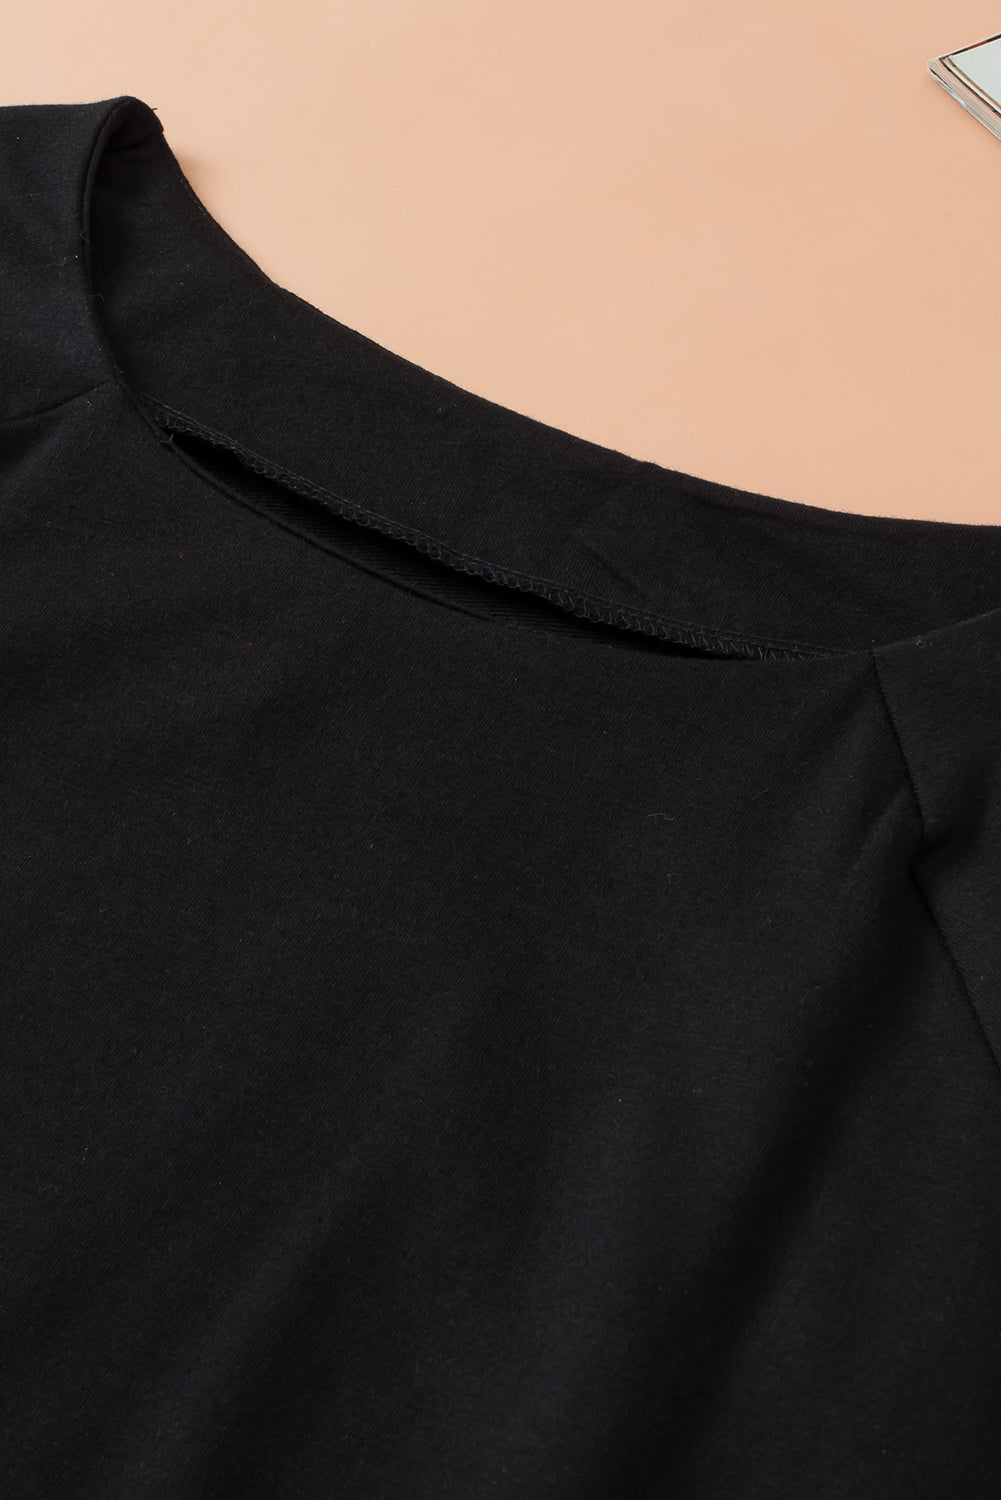 Schwarzes, einfarbiges, lässiges Raglan-Langarm-T-Shirt mit Rundhalsausschnitt